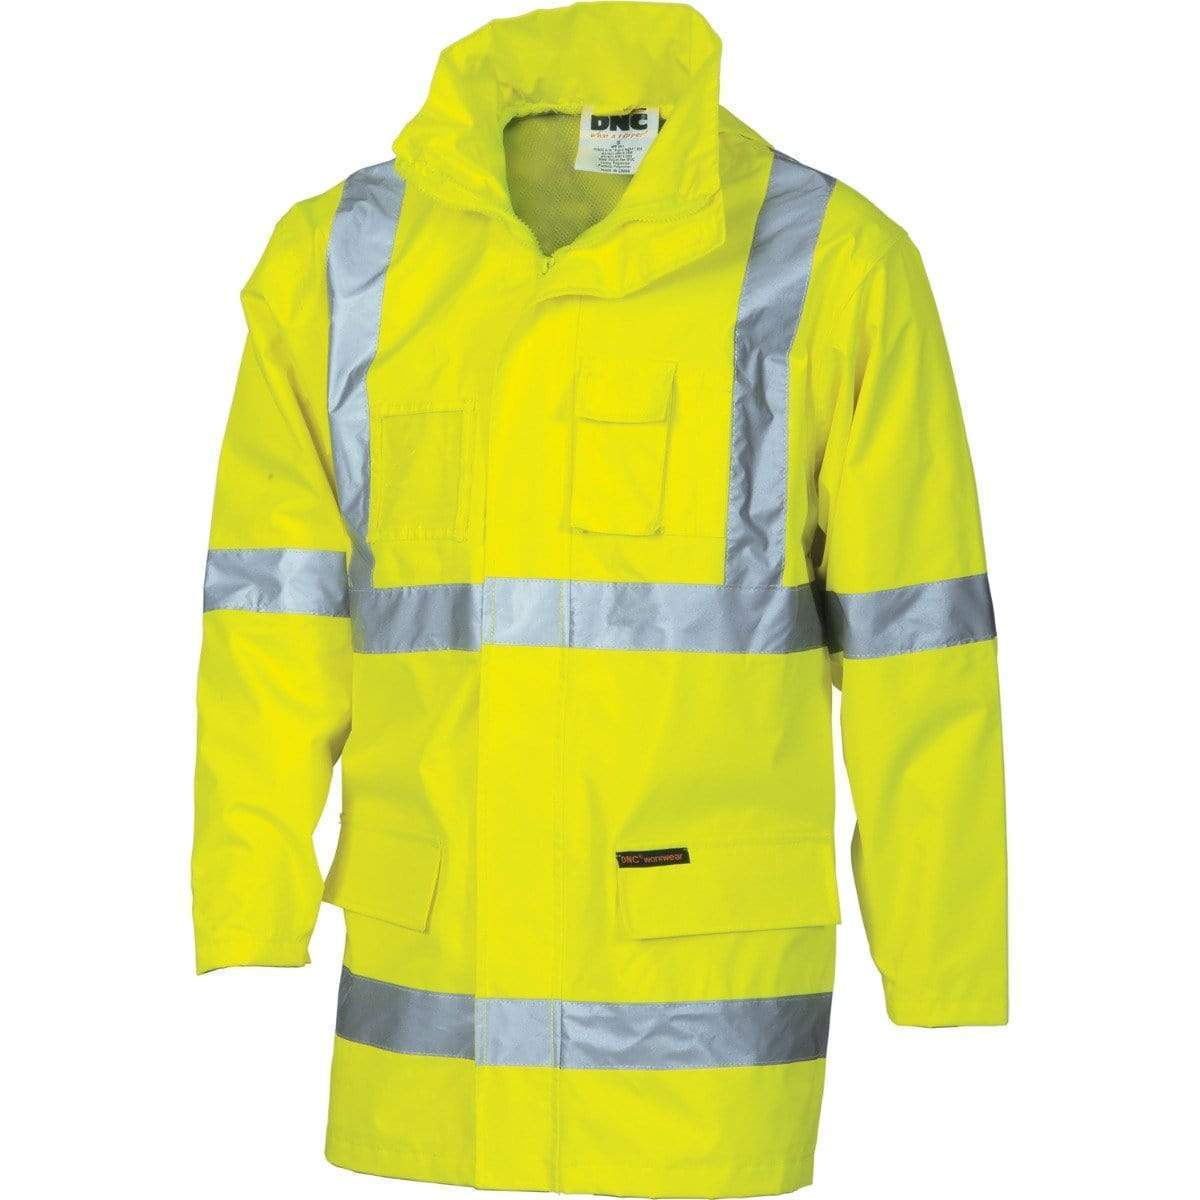 DNC Workwear Work Wear Yellow / XS DNC WORKWEAR Hi-Vis Cross-Back D/N 2-in-1 Rain Jacket 3995